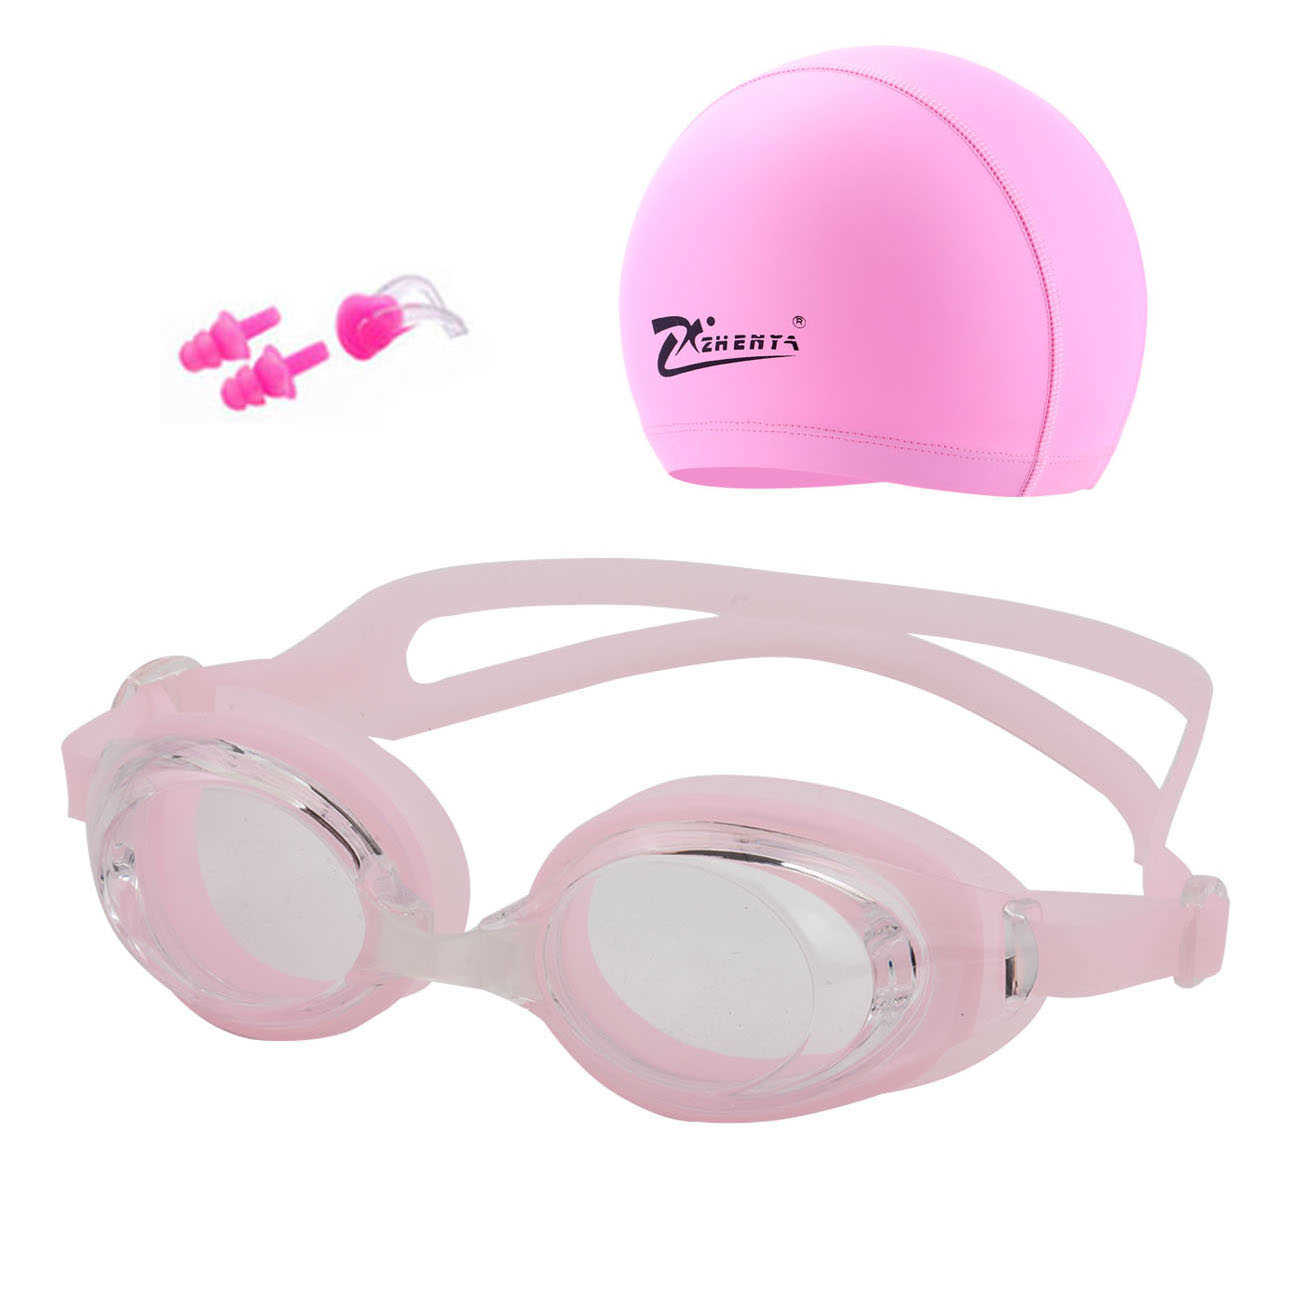 Gorro de natación antivaho gafas impermeables pendientes equipo de piscina hombres mujeres niños y adultos deportes gafas de buceo P230601 bueno